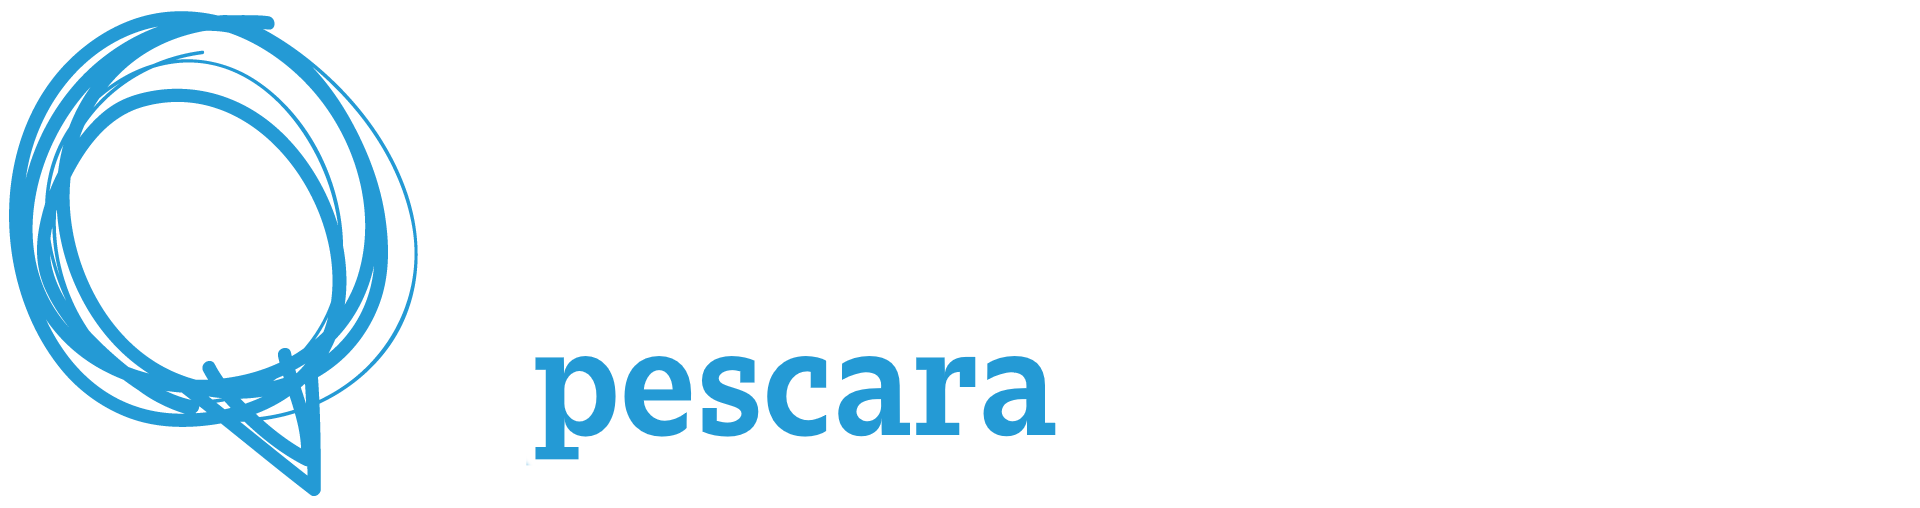 Agile Product Day Pescara